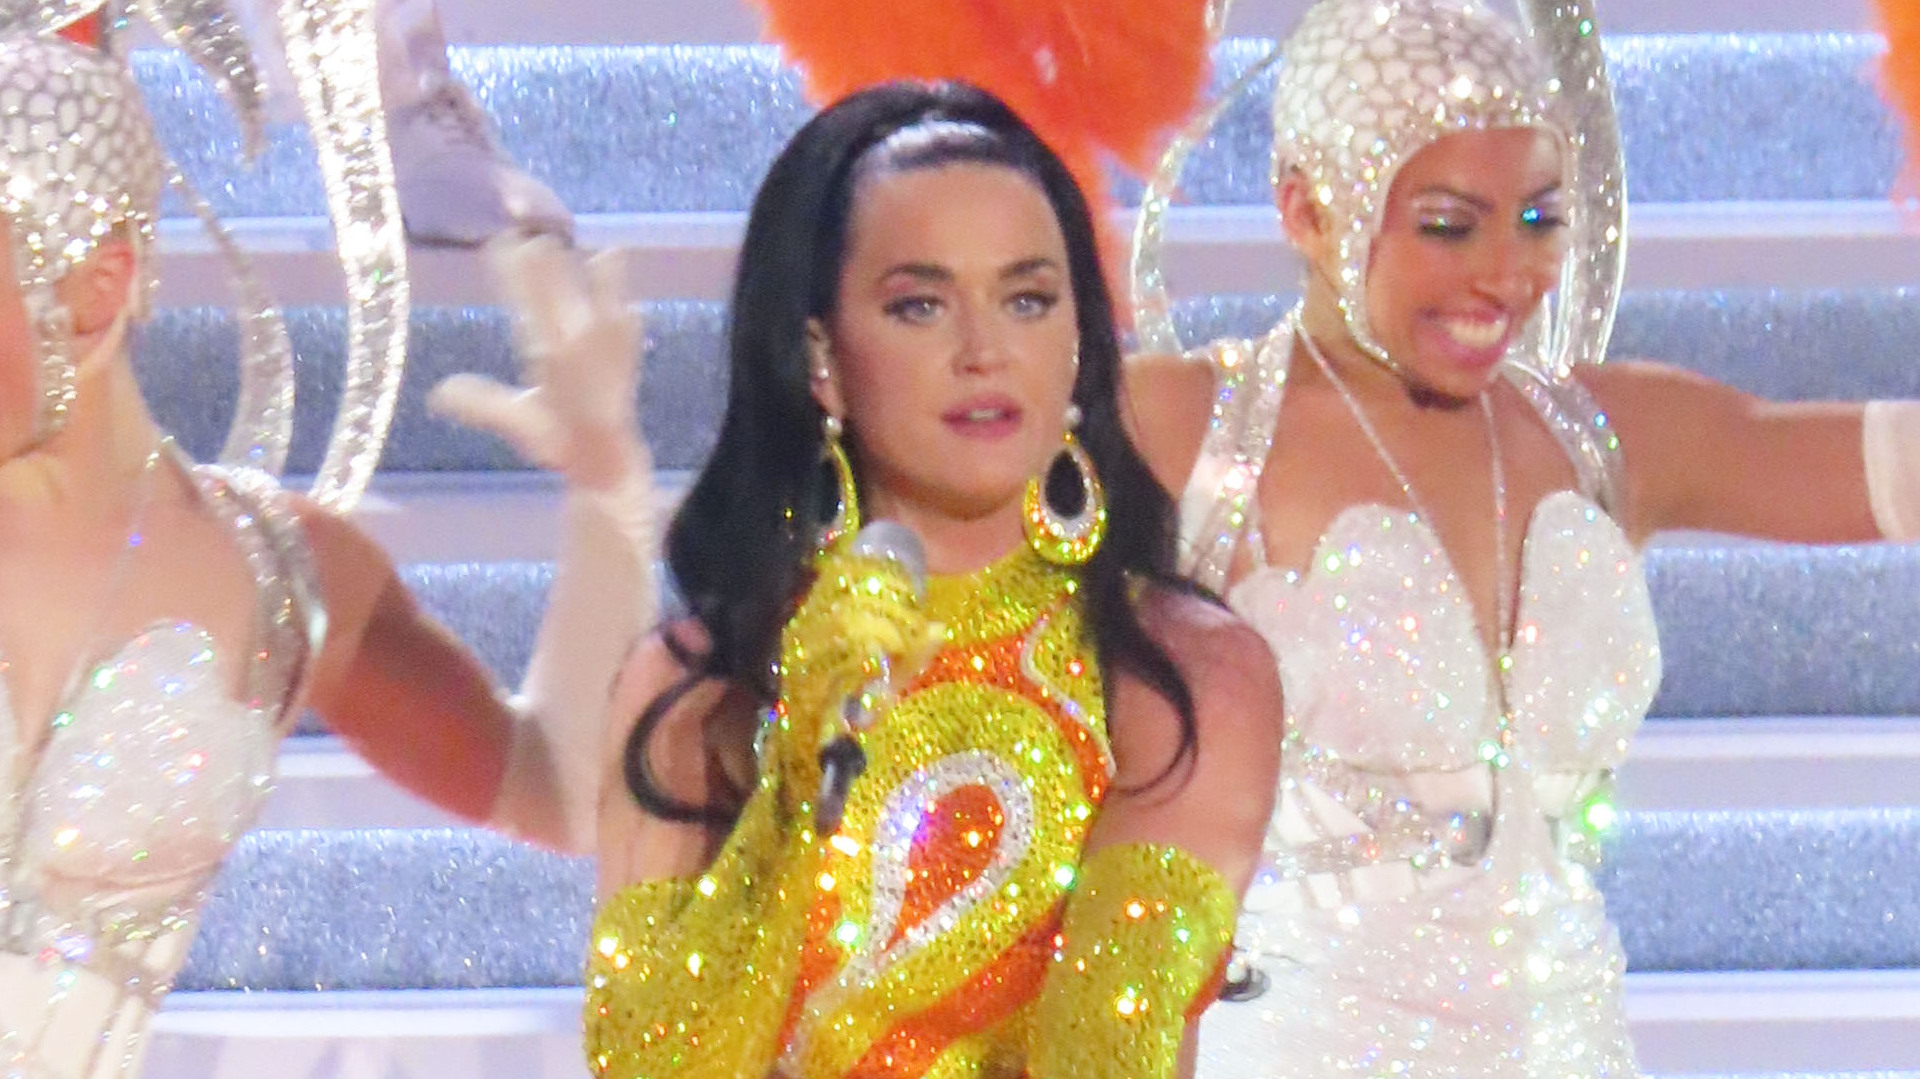 Otras versiones (capilares) de Katy Perry